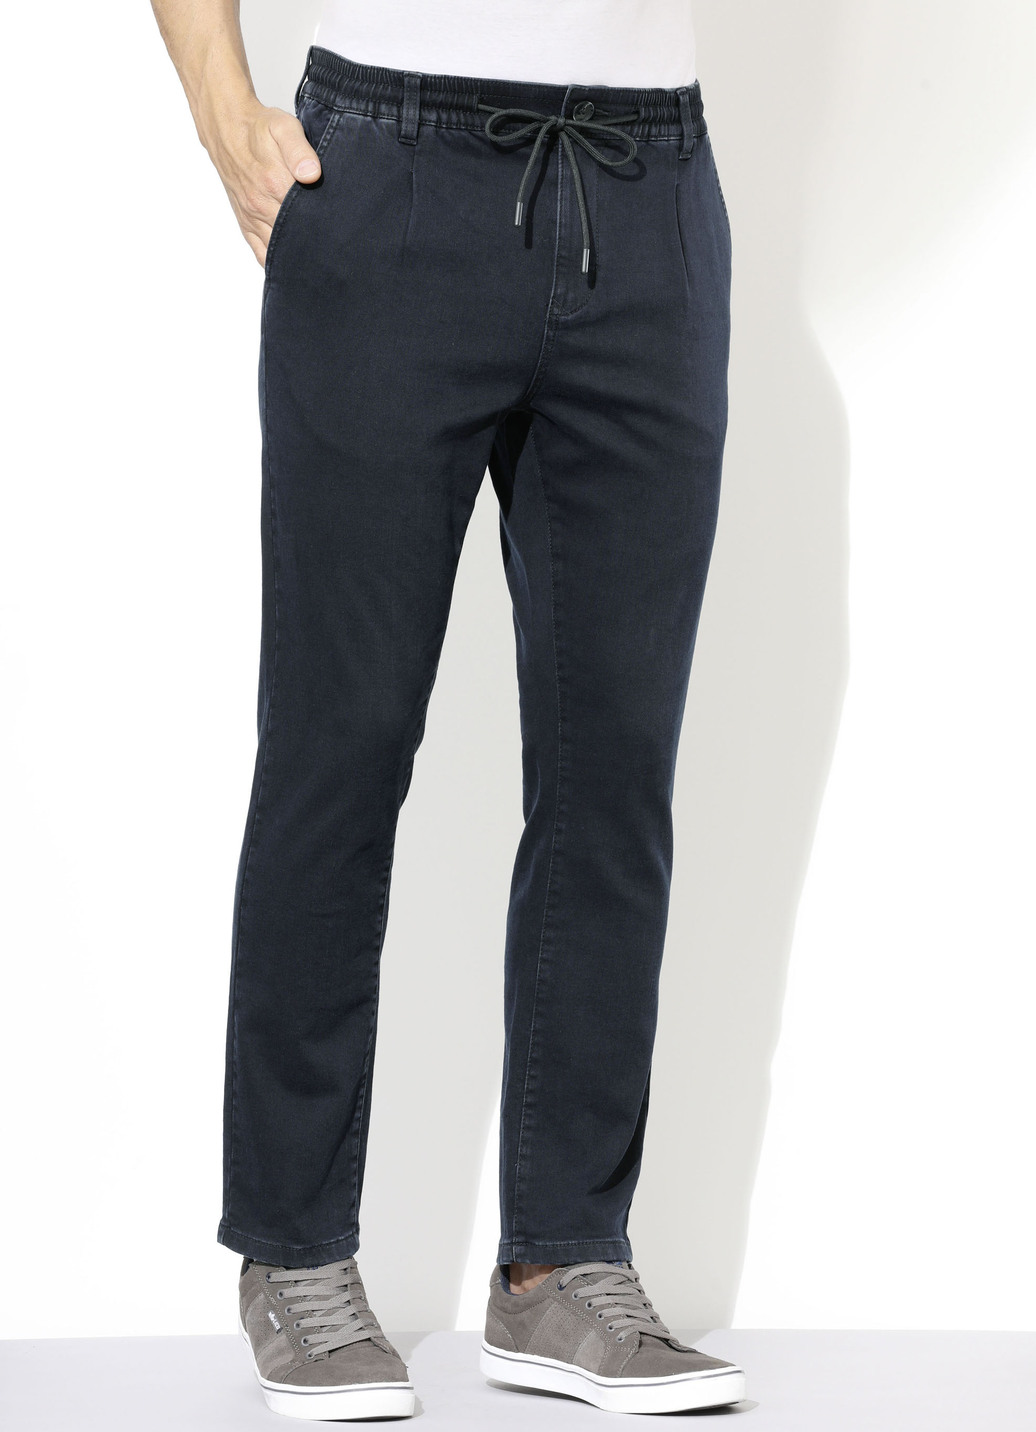 Superstretch-Jeans in 3 Farben, Dunkelblau, Größe 29 von DANNECKER